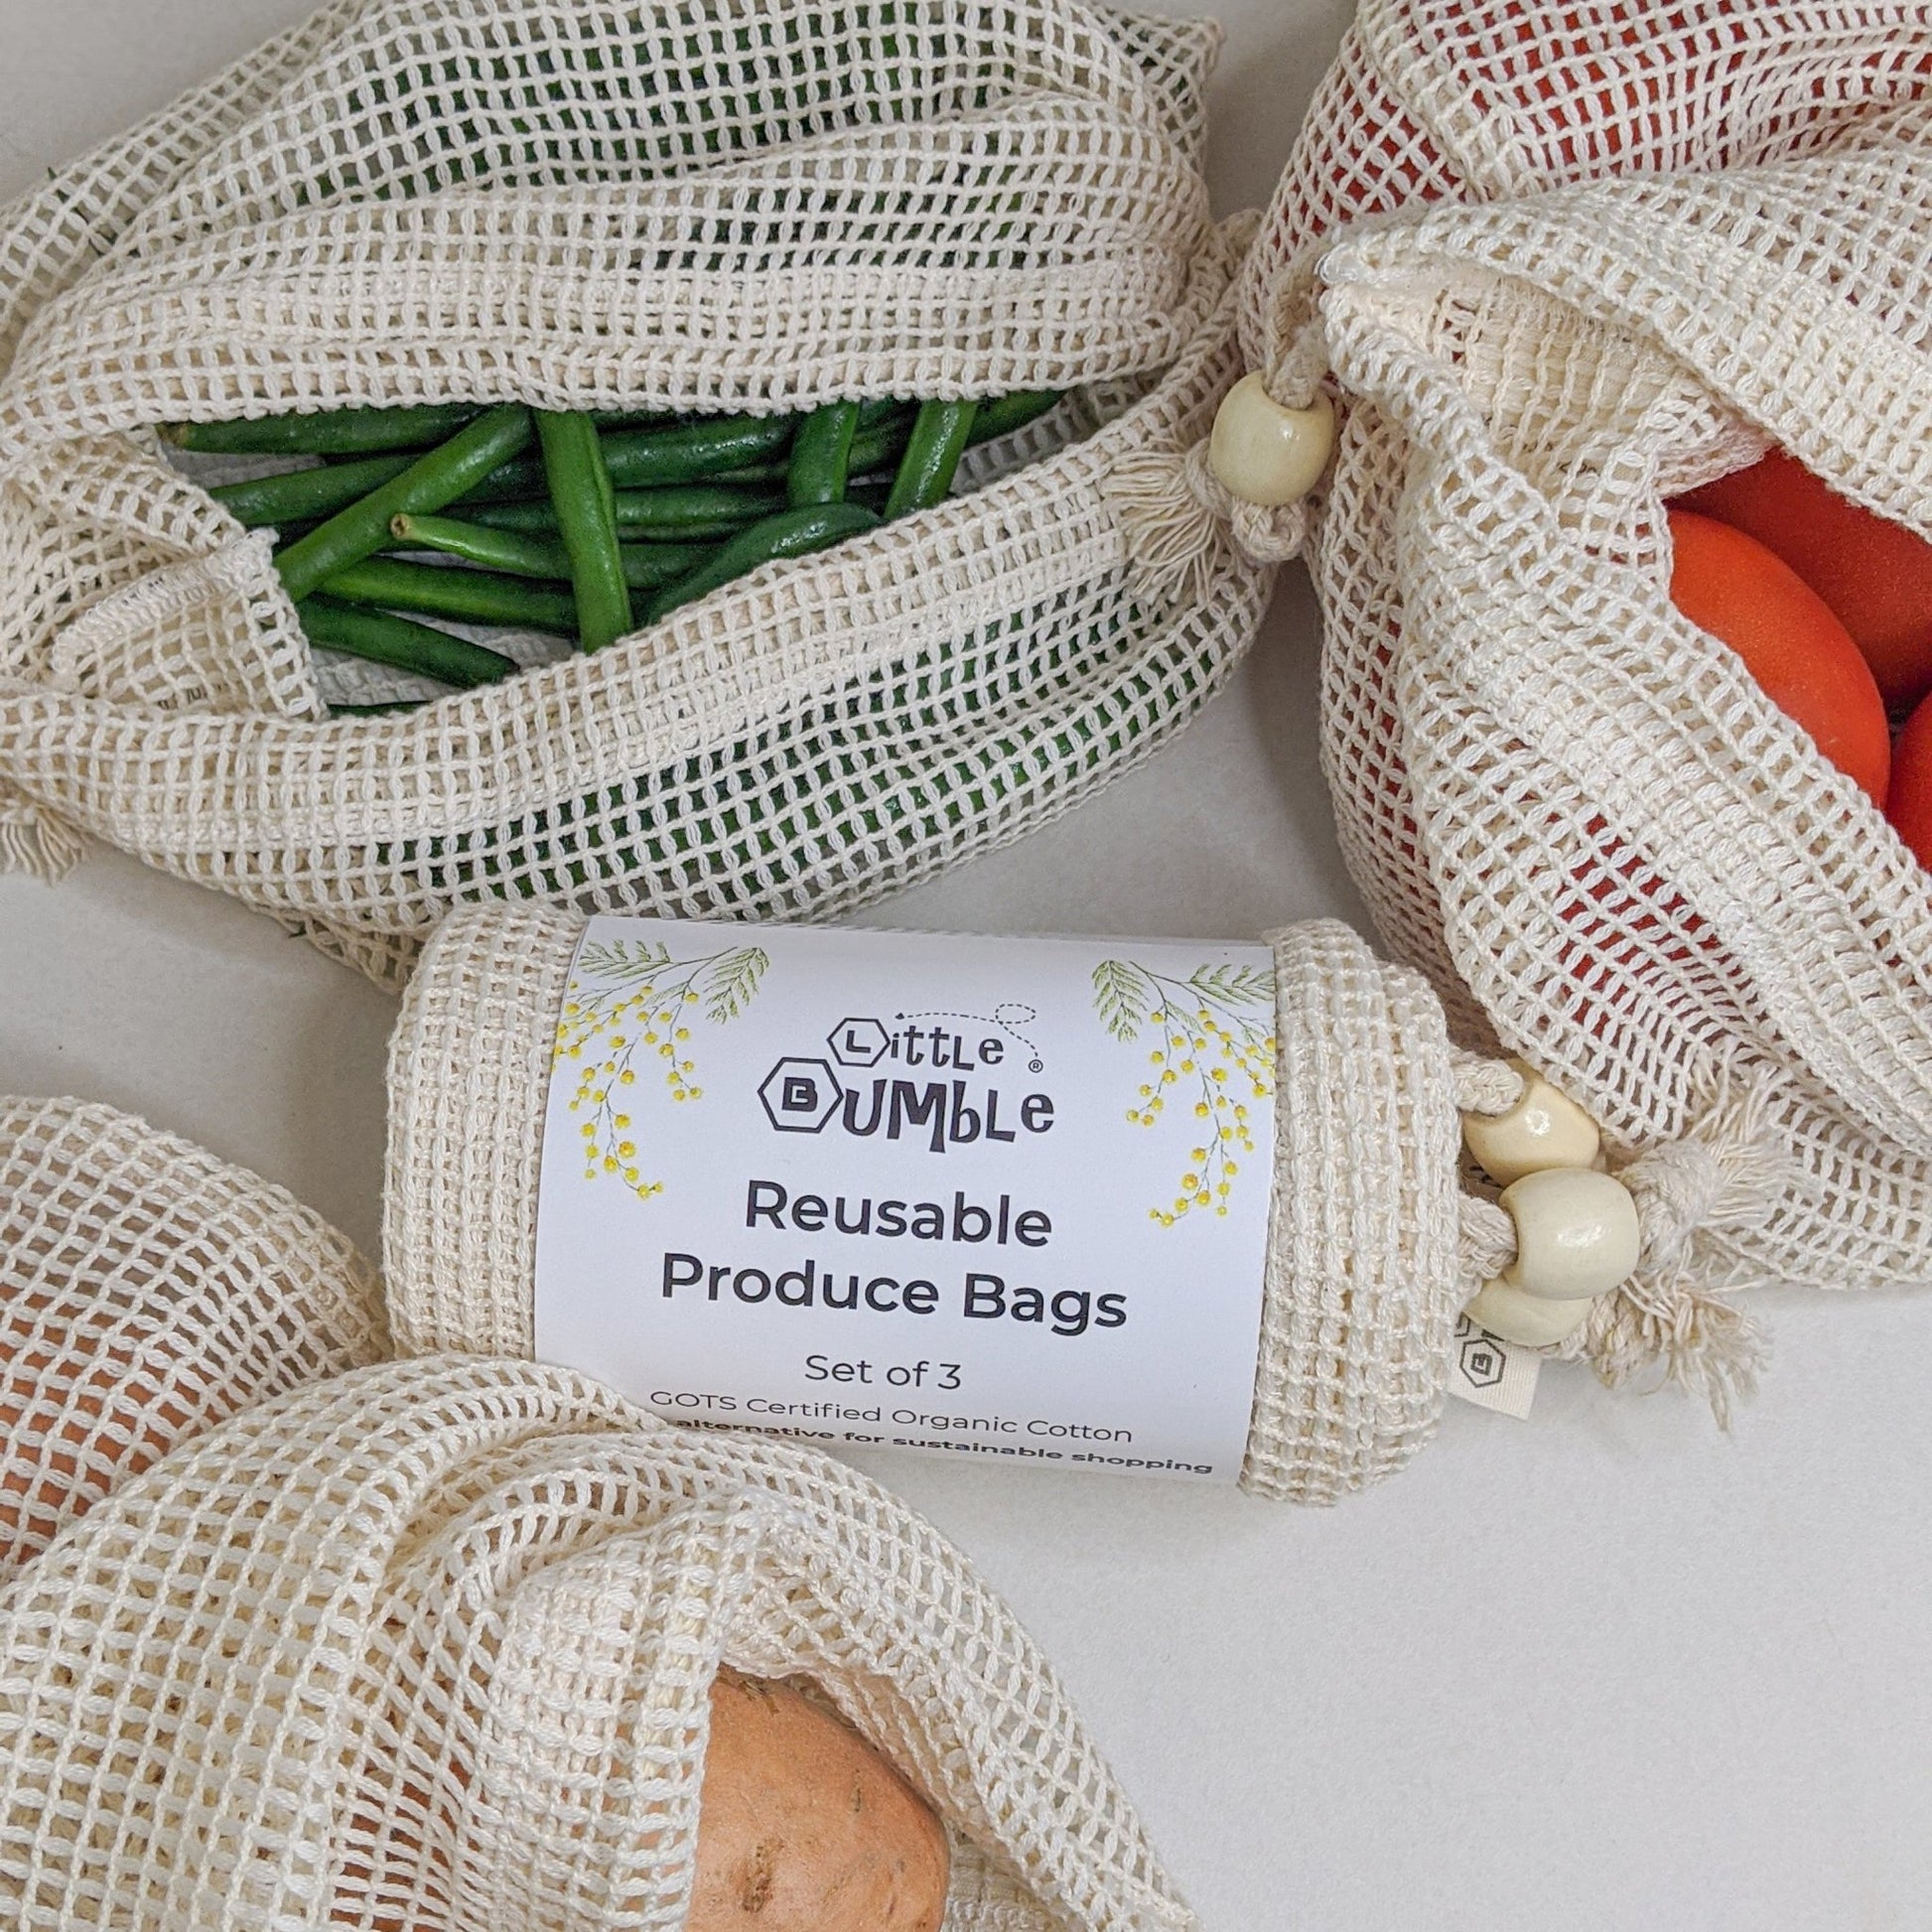 Organic Reusable Produce Bags - 3pk (Small, Medium & Large) - Little Bumble Reusable Food Wraps